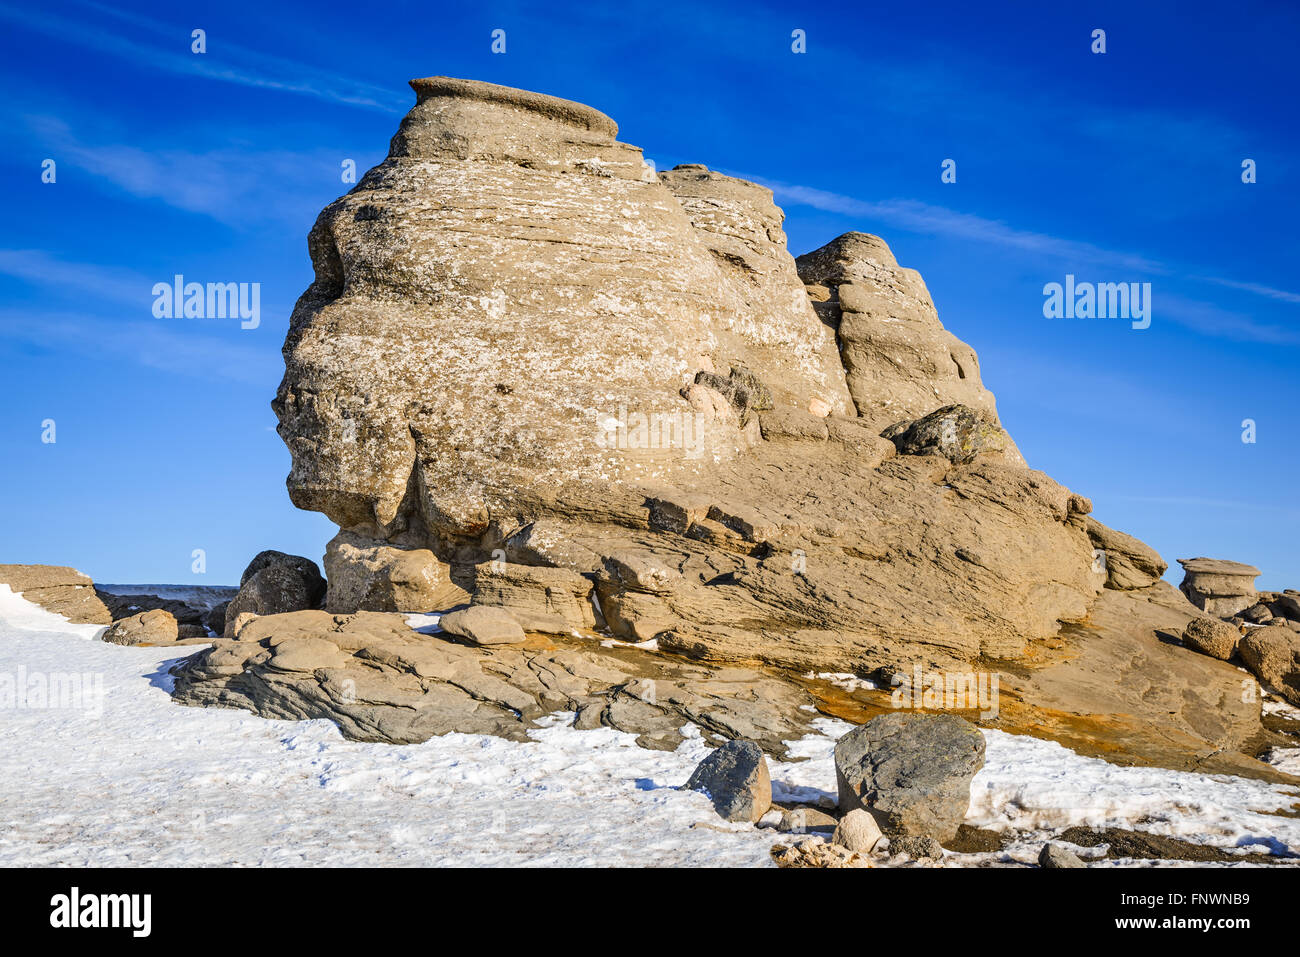 Les montagnes des Carpates, en Roumanie. Sphinx roumain, rocher naturel formé et phénomène géologique formé par l'érosion Monts Bucegi. Banque D'Images